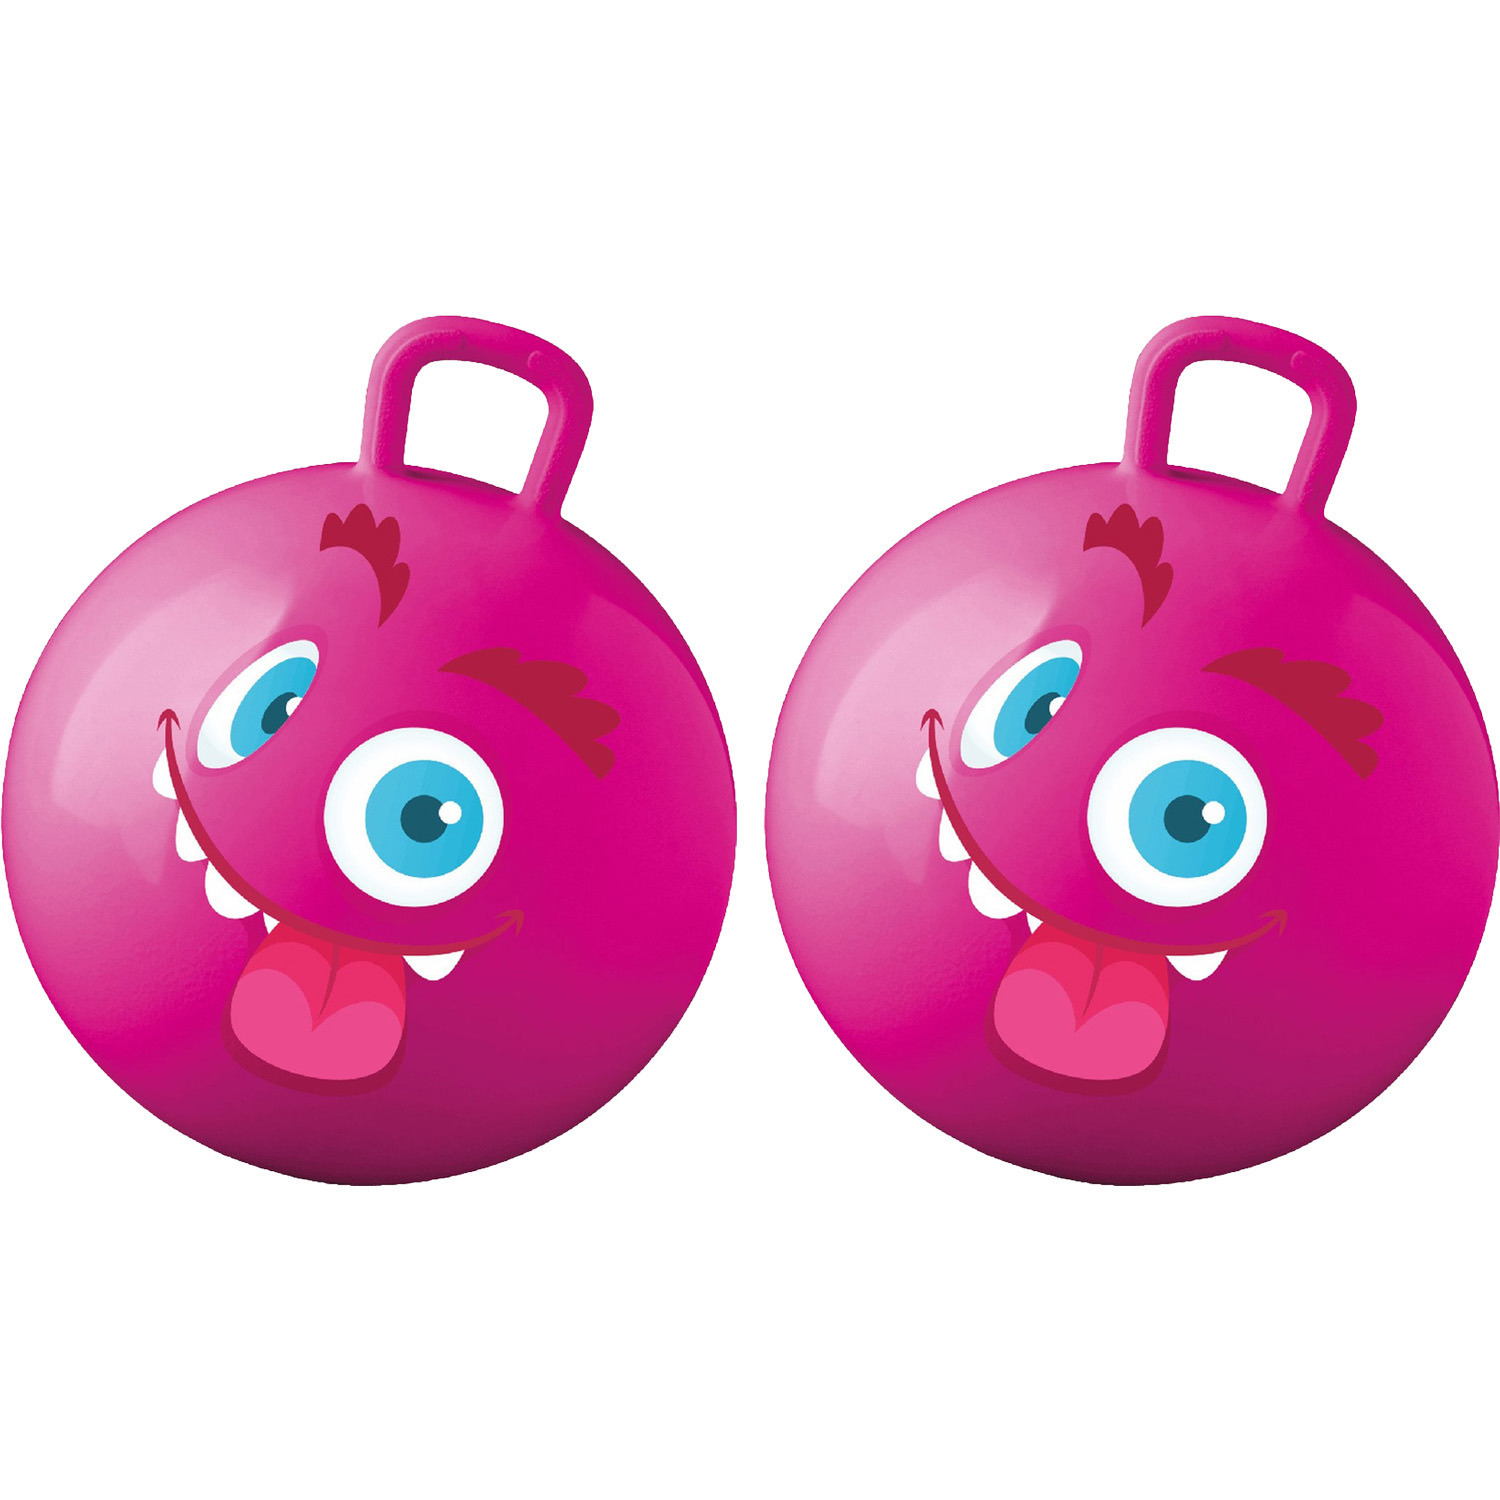 Summer Play Skippybal met smiley 2x roze 50 cm buitenspeelgoed voor kinderen